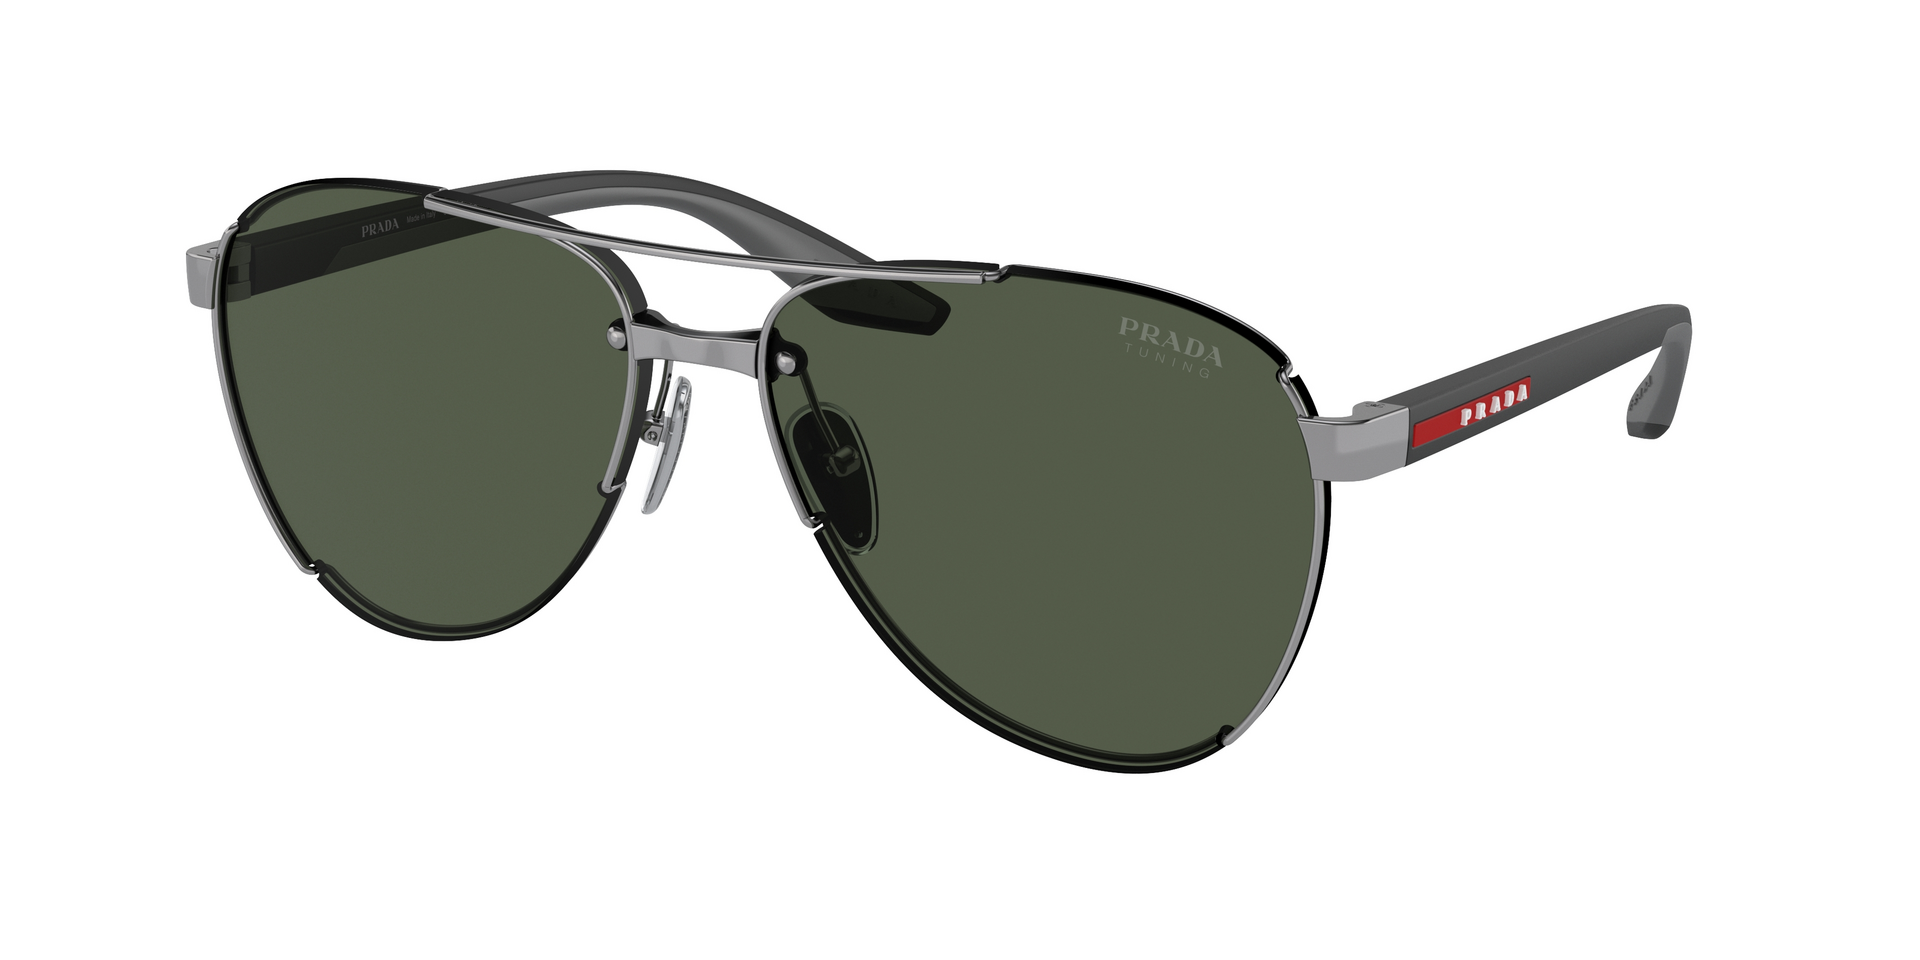 Das Bild zeigt die Sonnenbrille PS51YS 5AV50F von der Marke Prada Linea Rossa in silber.